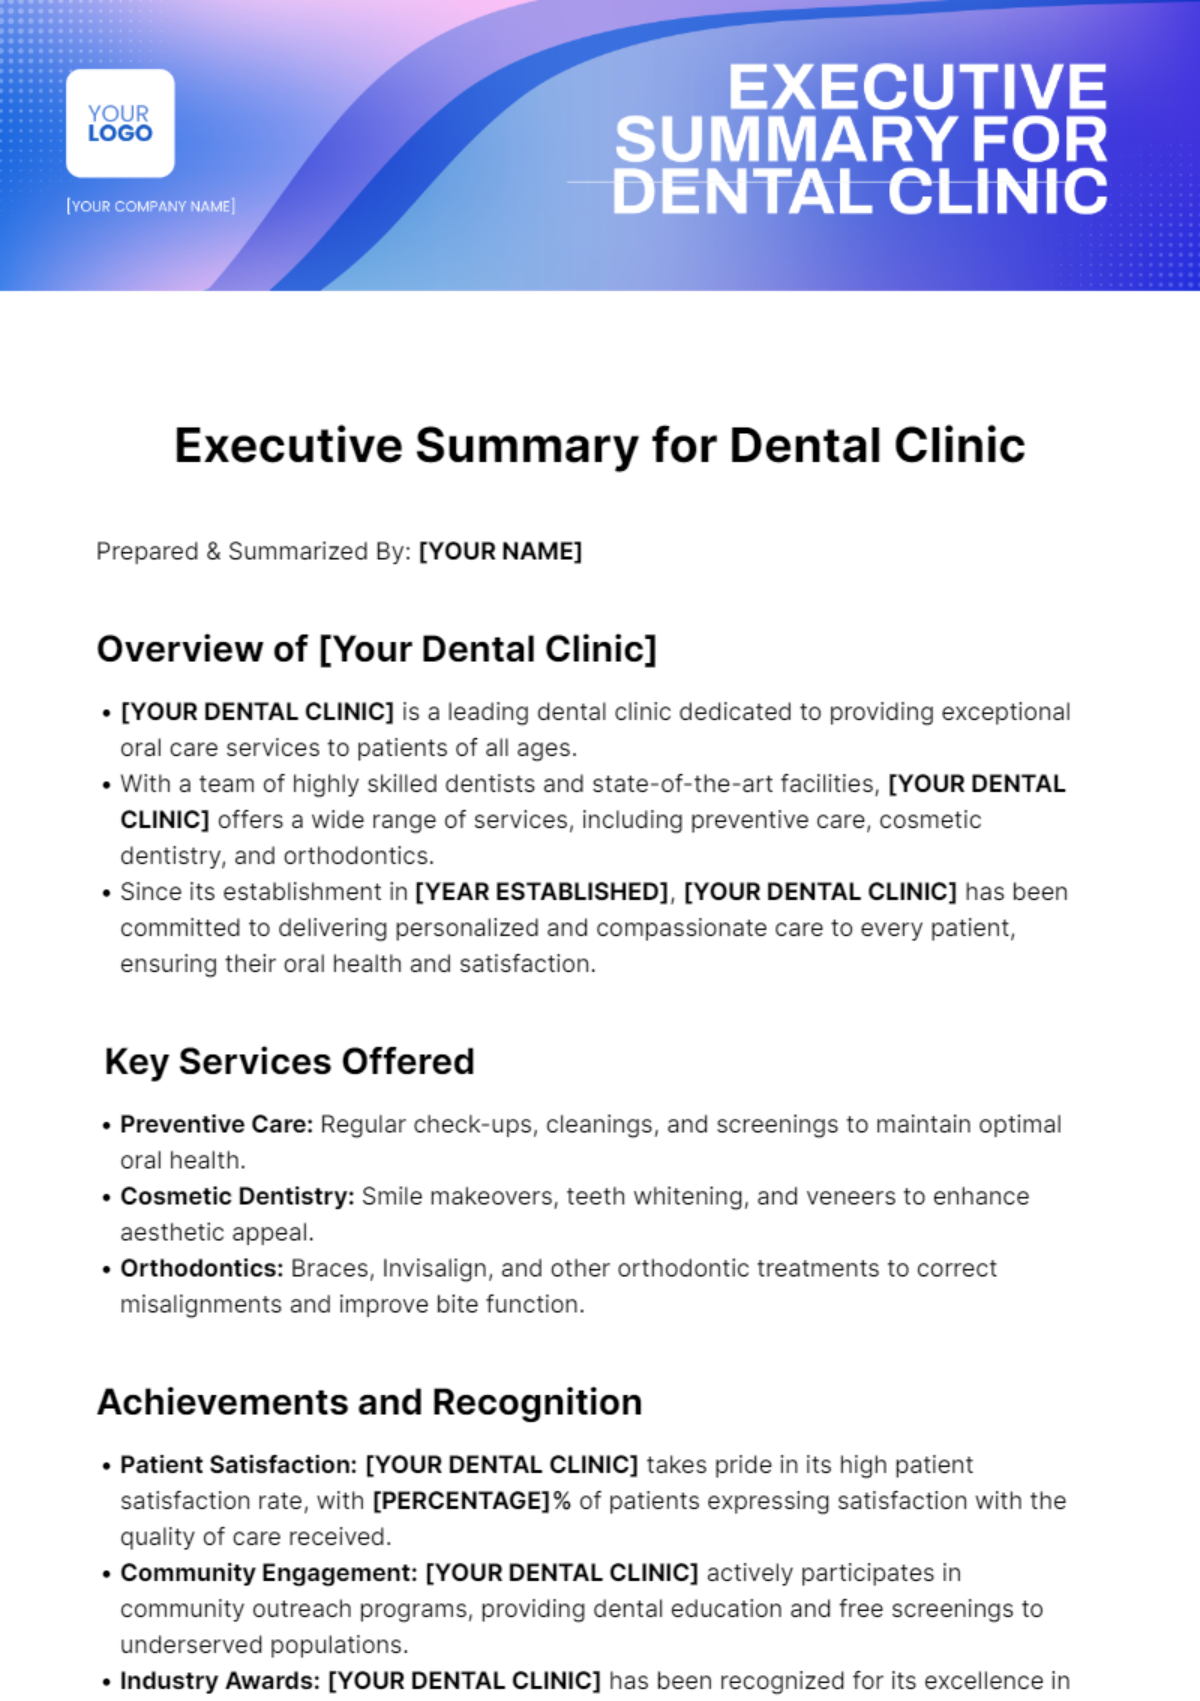 Executive Summary for Dental Clinic Template